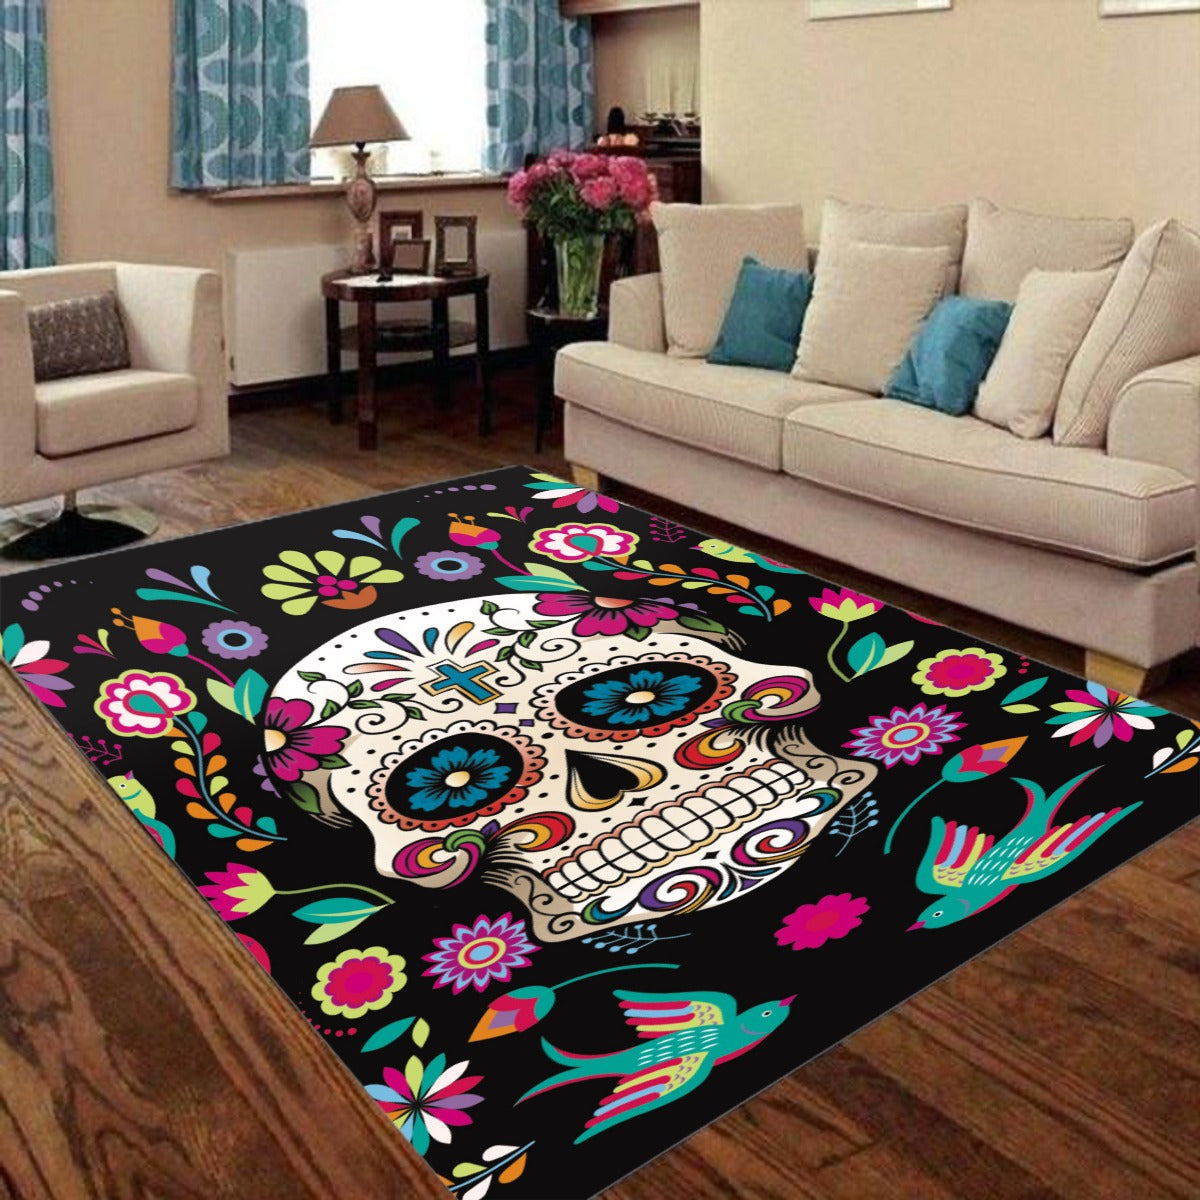 Mexican skull sugar skull pattern Foldable Rectangular Floor Mat